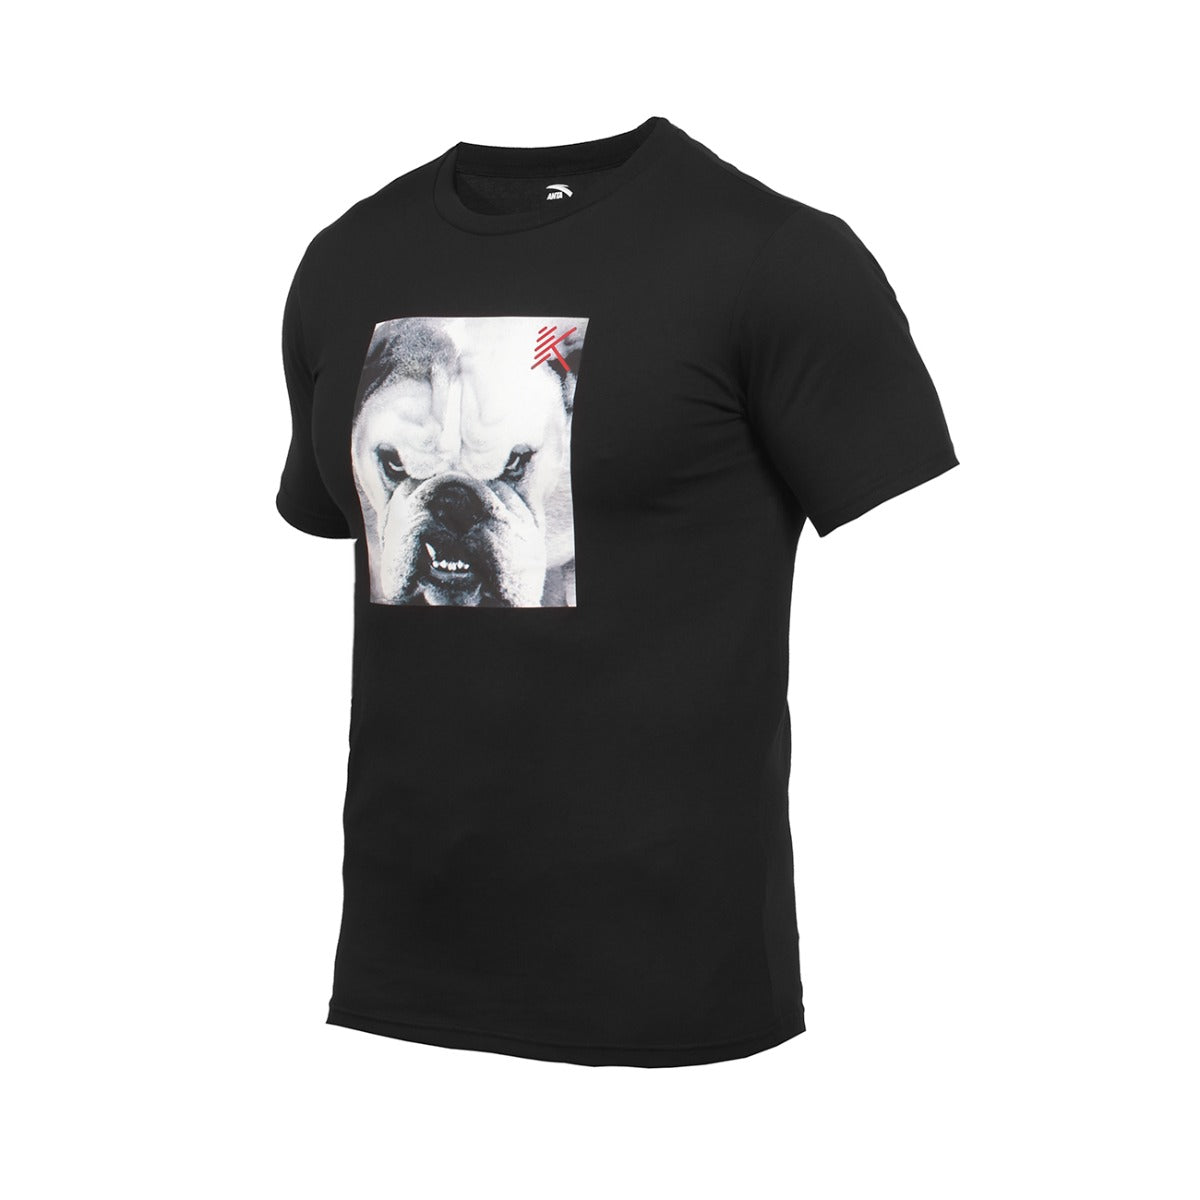 Anta SS TEE Basketball T-Shirt For Men, Black